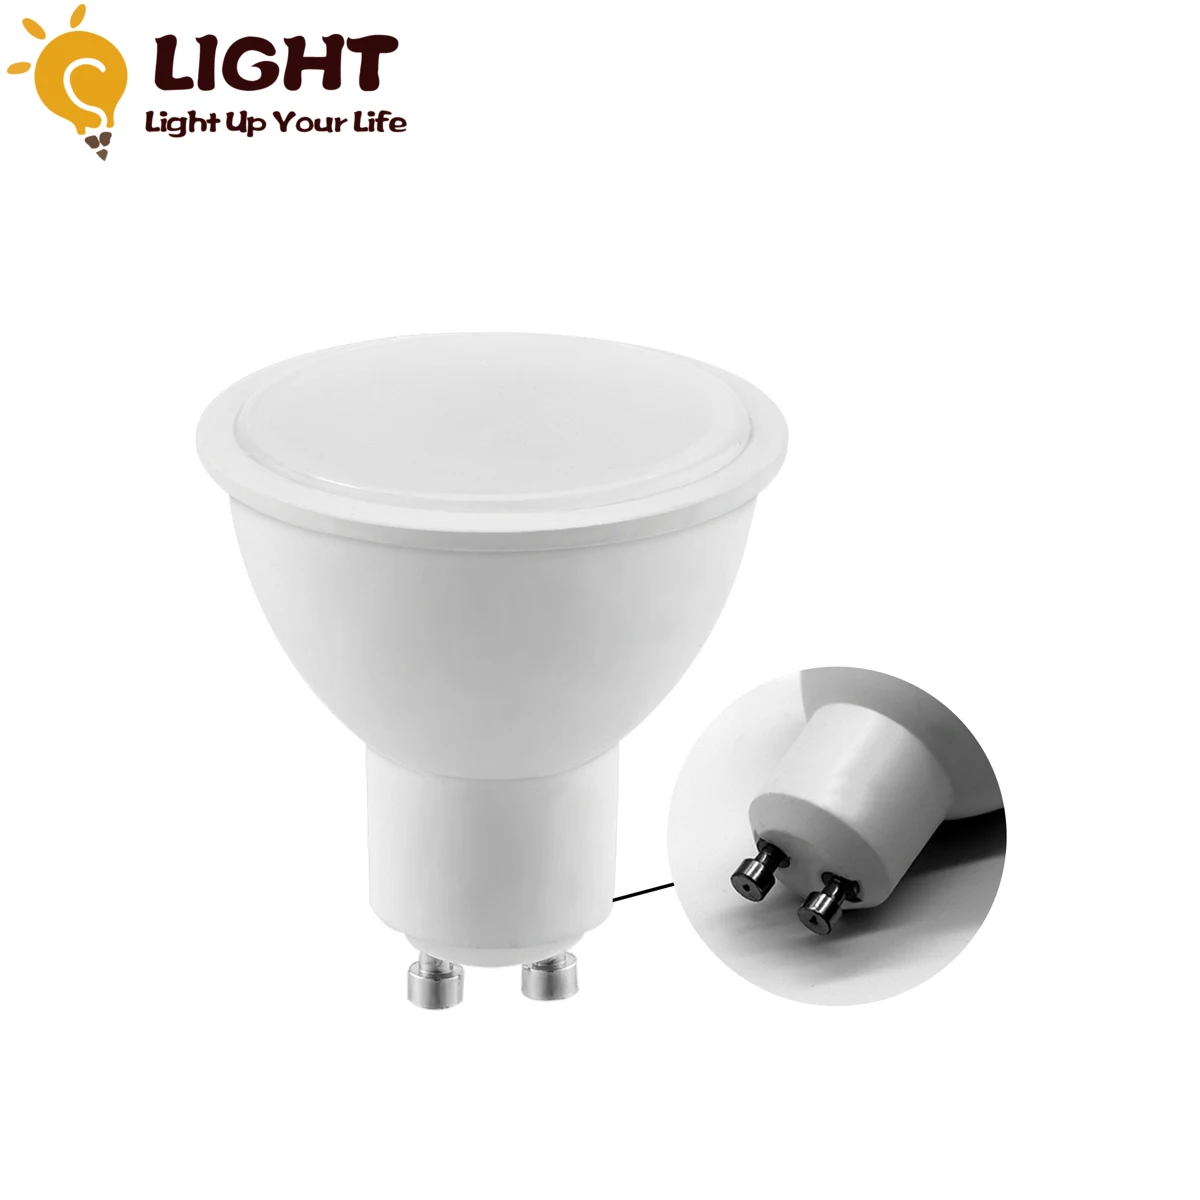 

LED Bulb GU10 5W Lampada LED Light AC 220V 230V 240V Bombilla Spotlight Lighting Cold/Warm White Lamp for Indoor Lighting